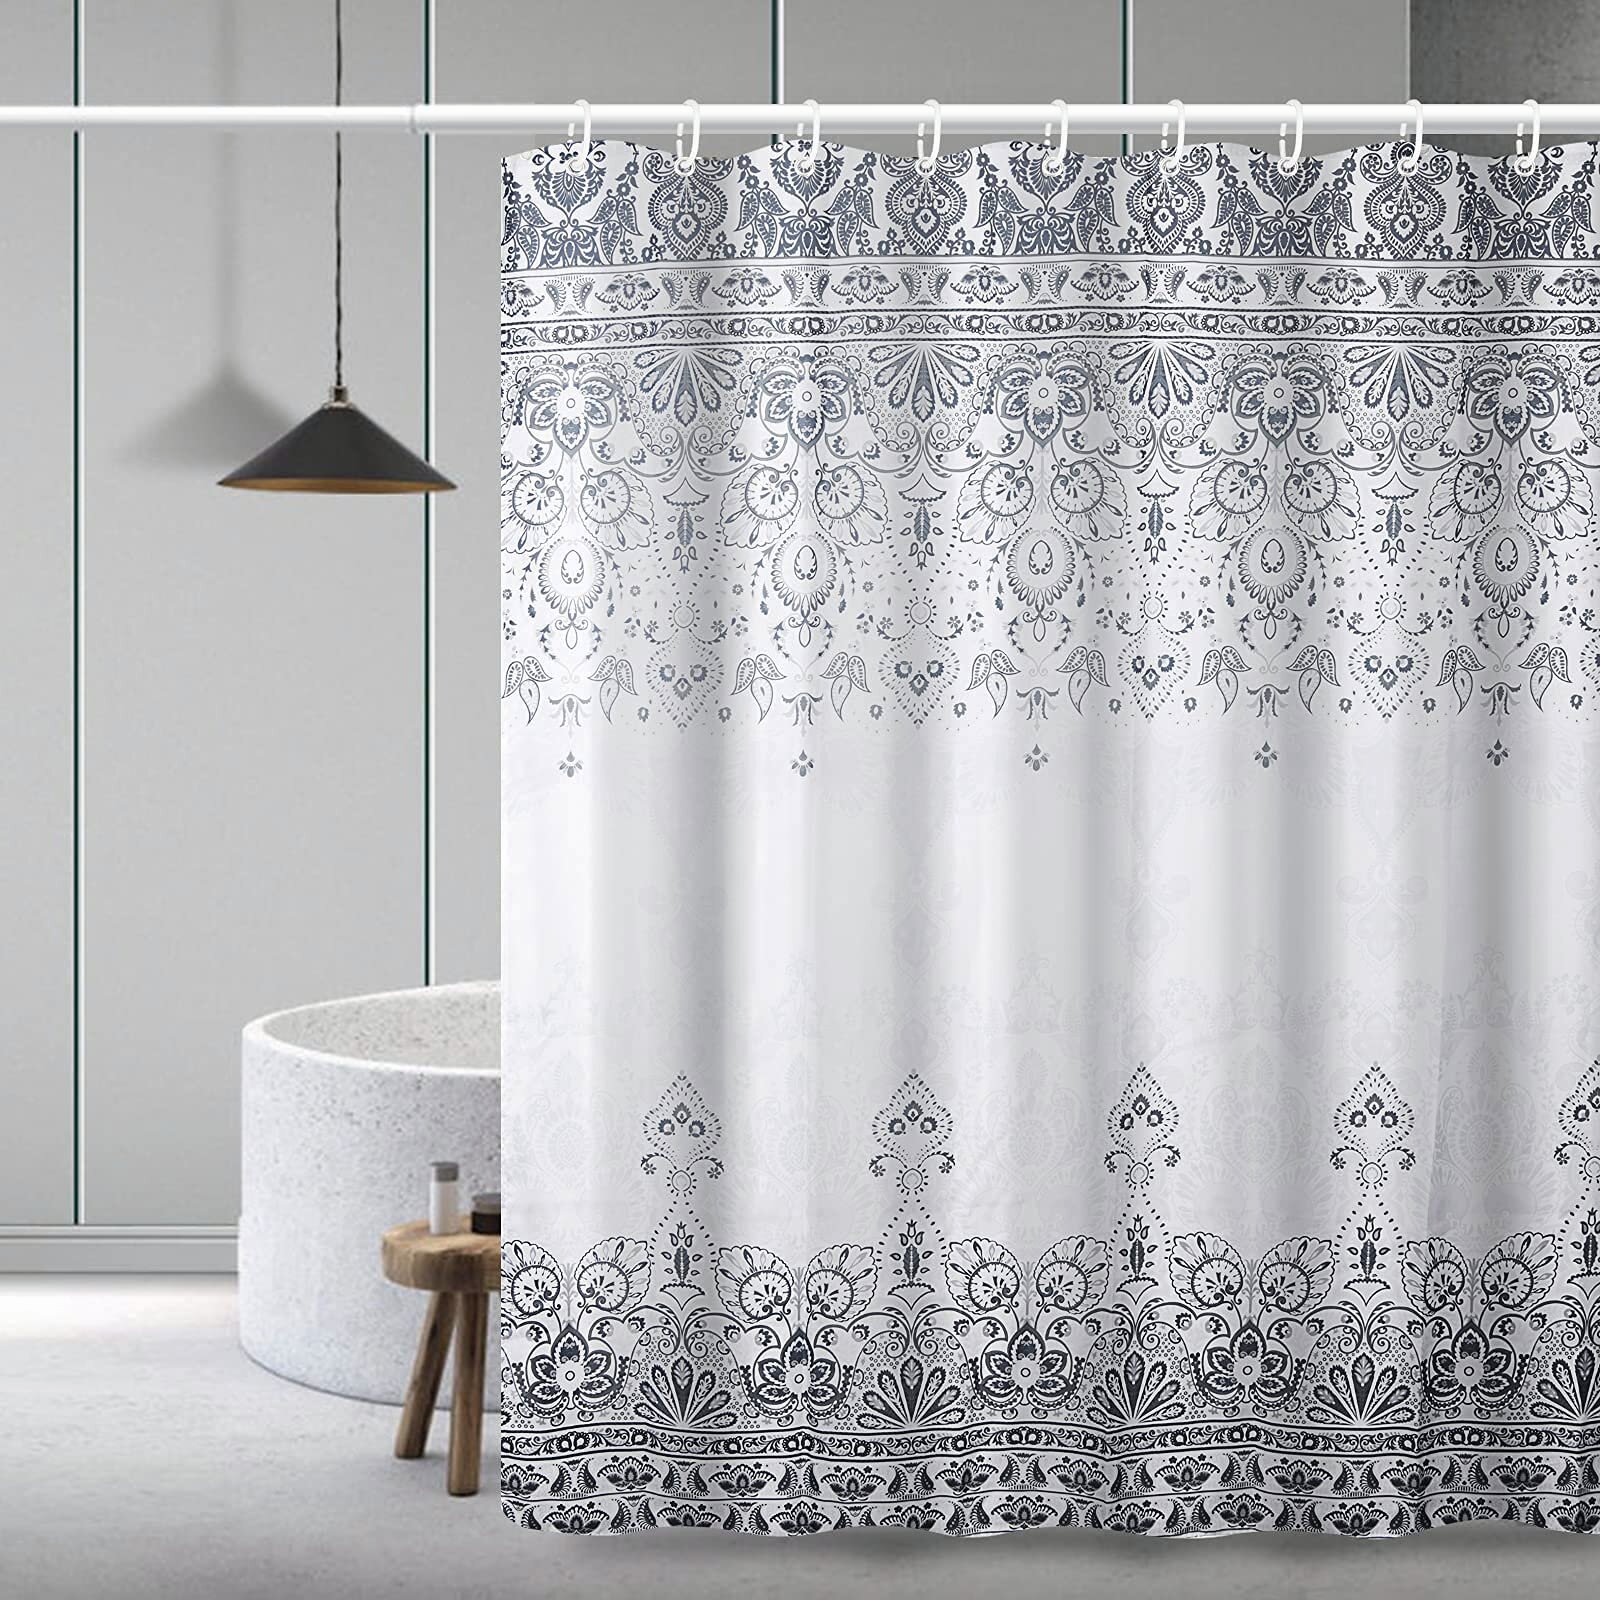 Black Rose Waterproof Bathroom Polyester Shower Curtain Liner Water Resistant 